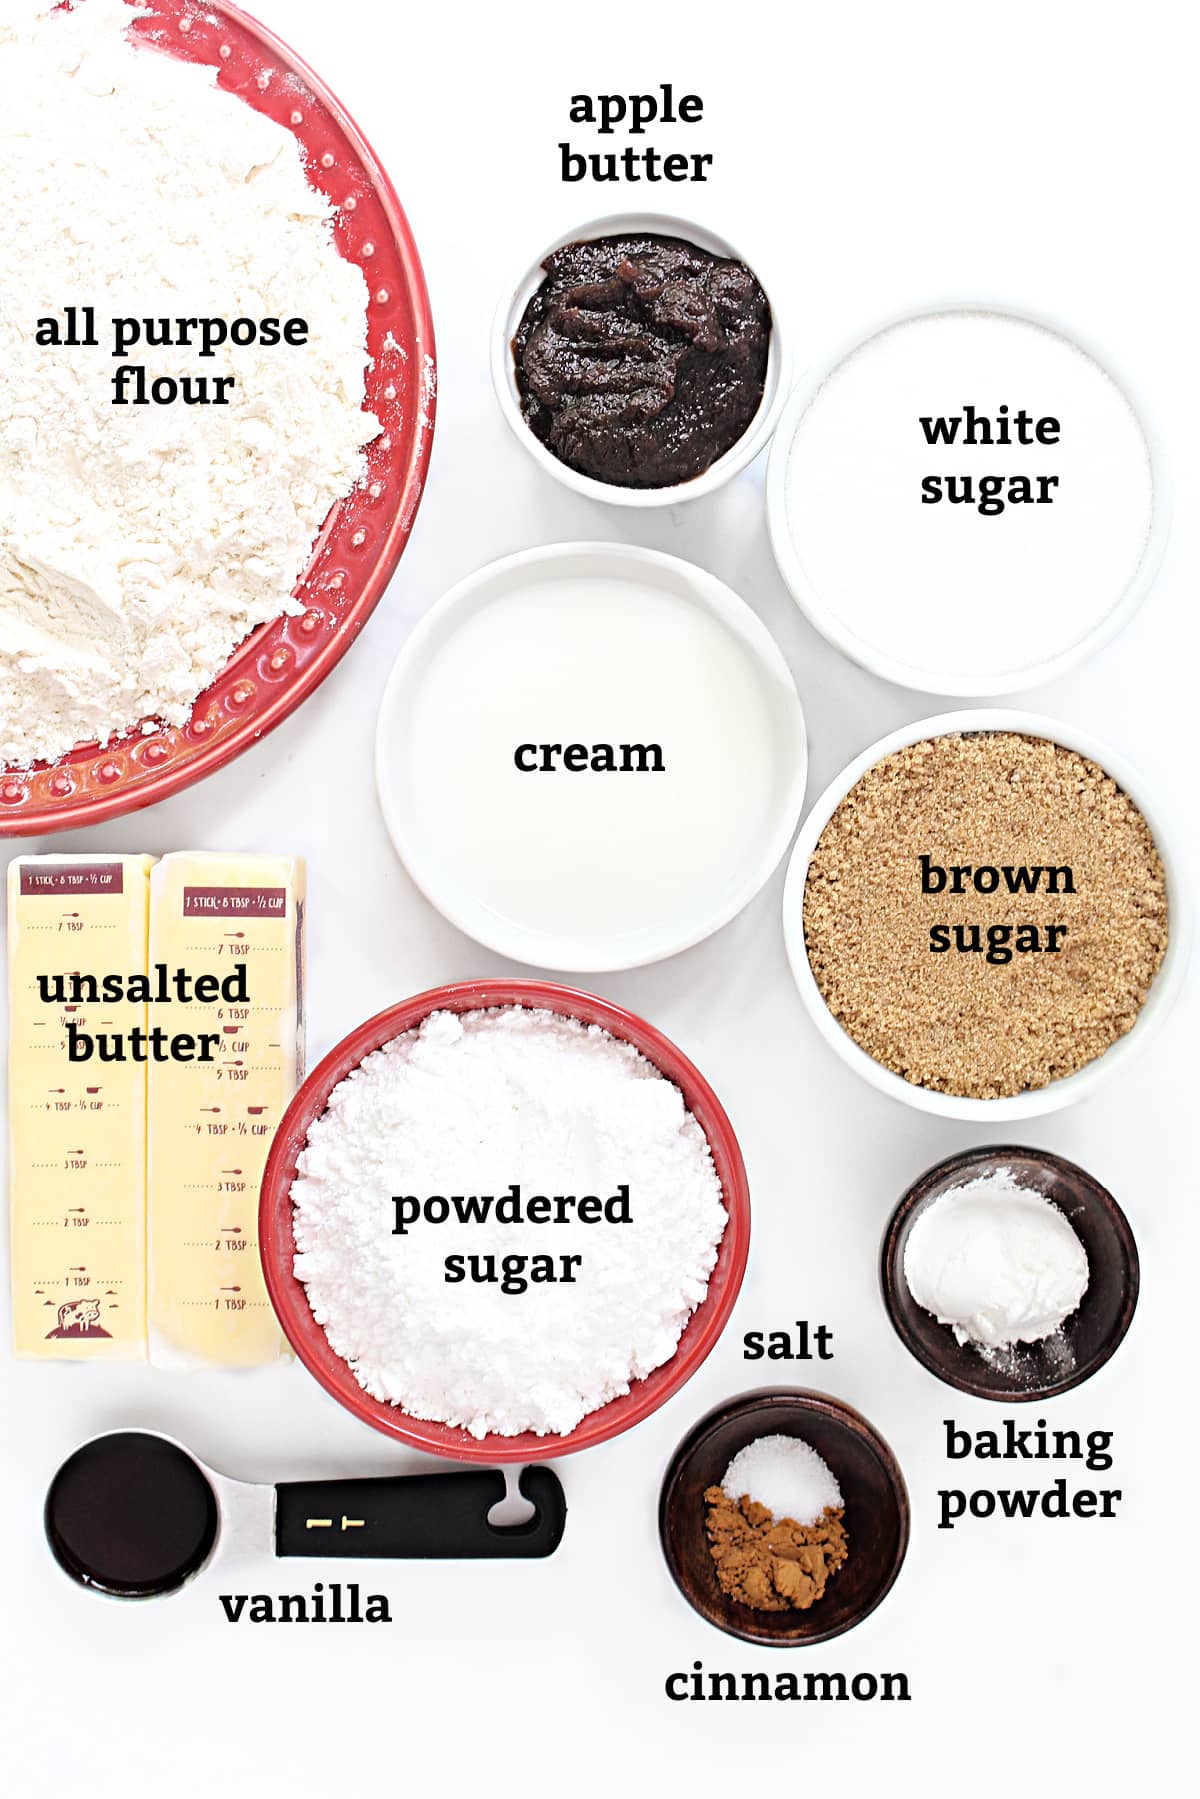 Ingredients: flour, apple butter, brown sugar, white sugar, cream, butter, powdered sugar, baking powder, salt, cinnamon, vanilla.